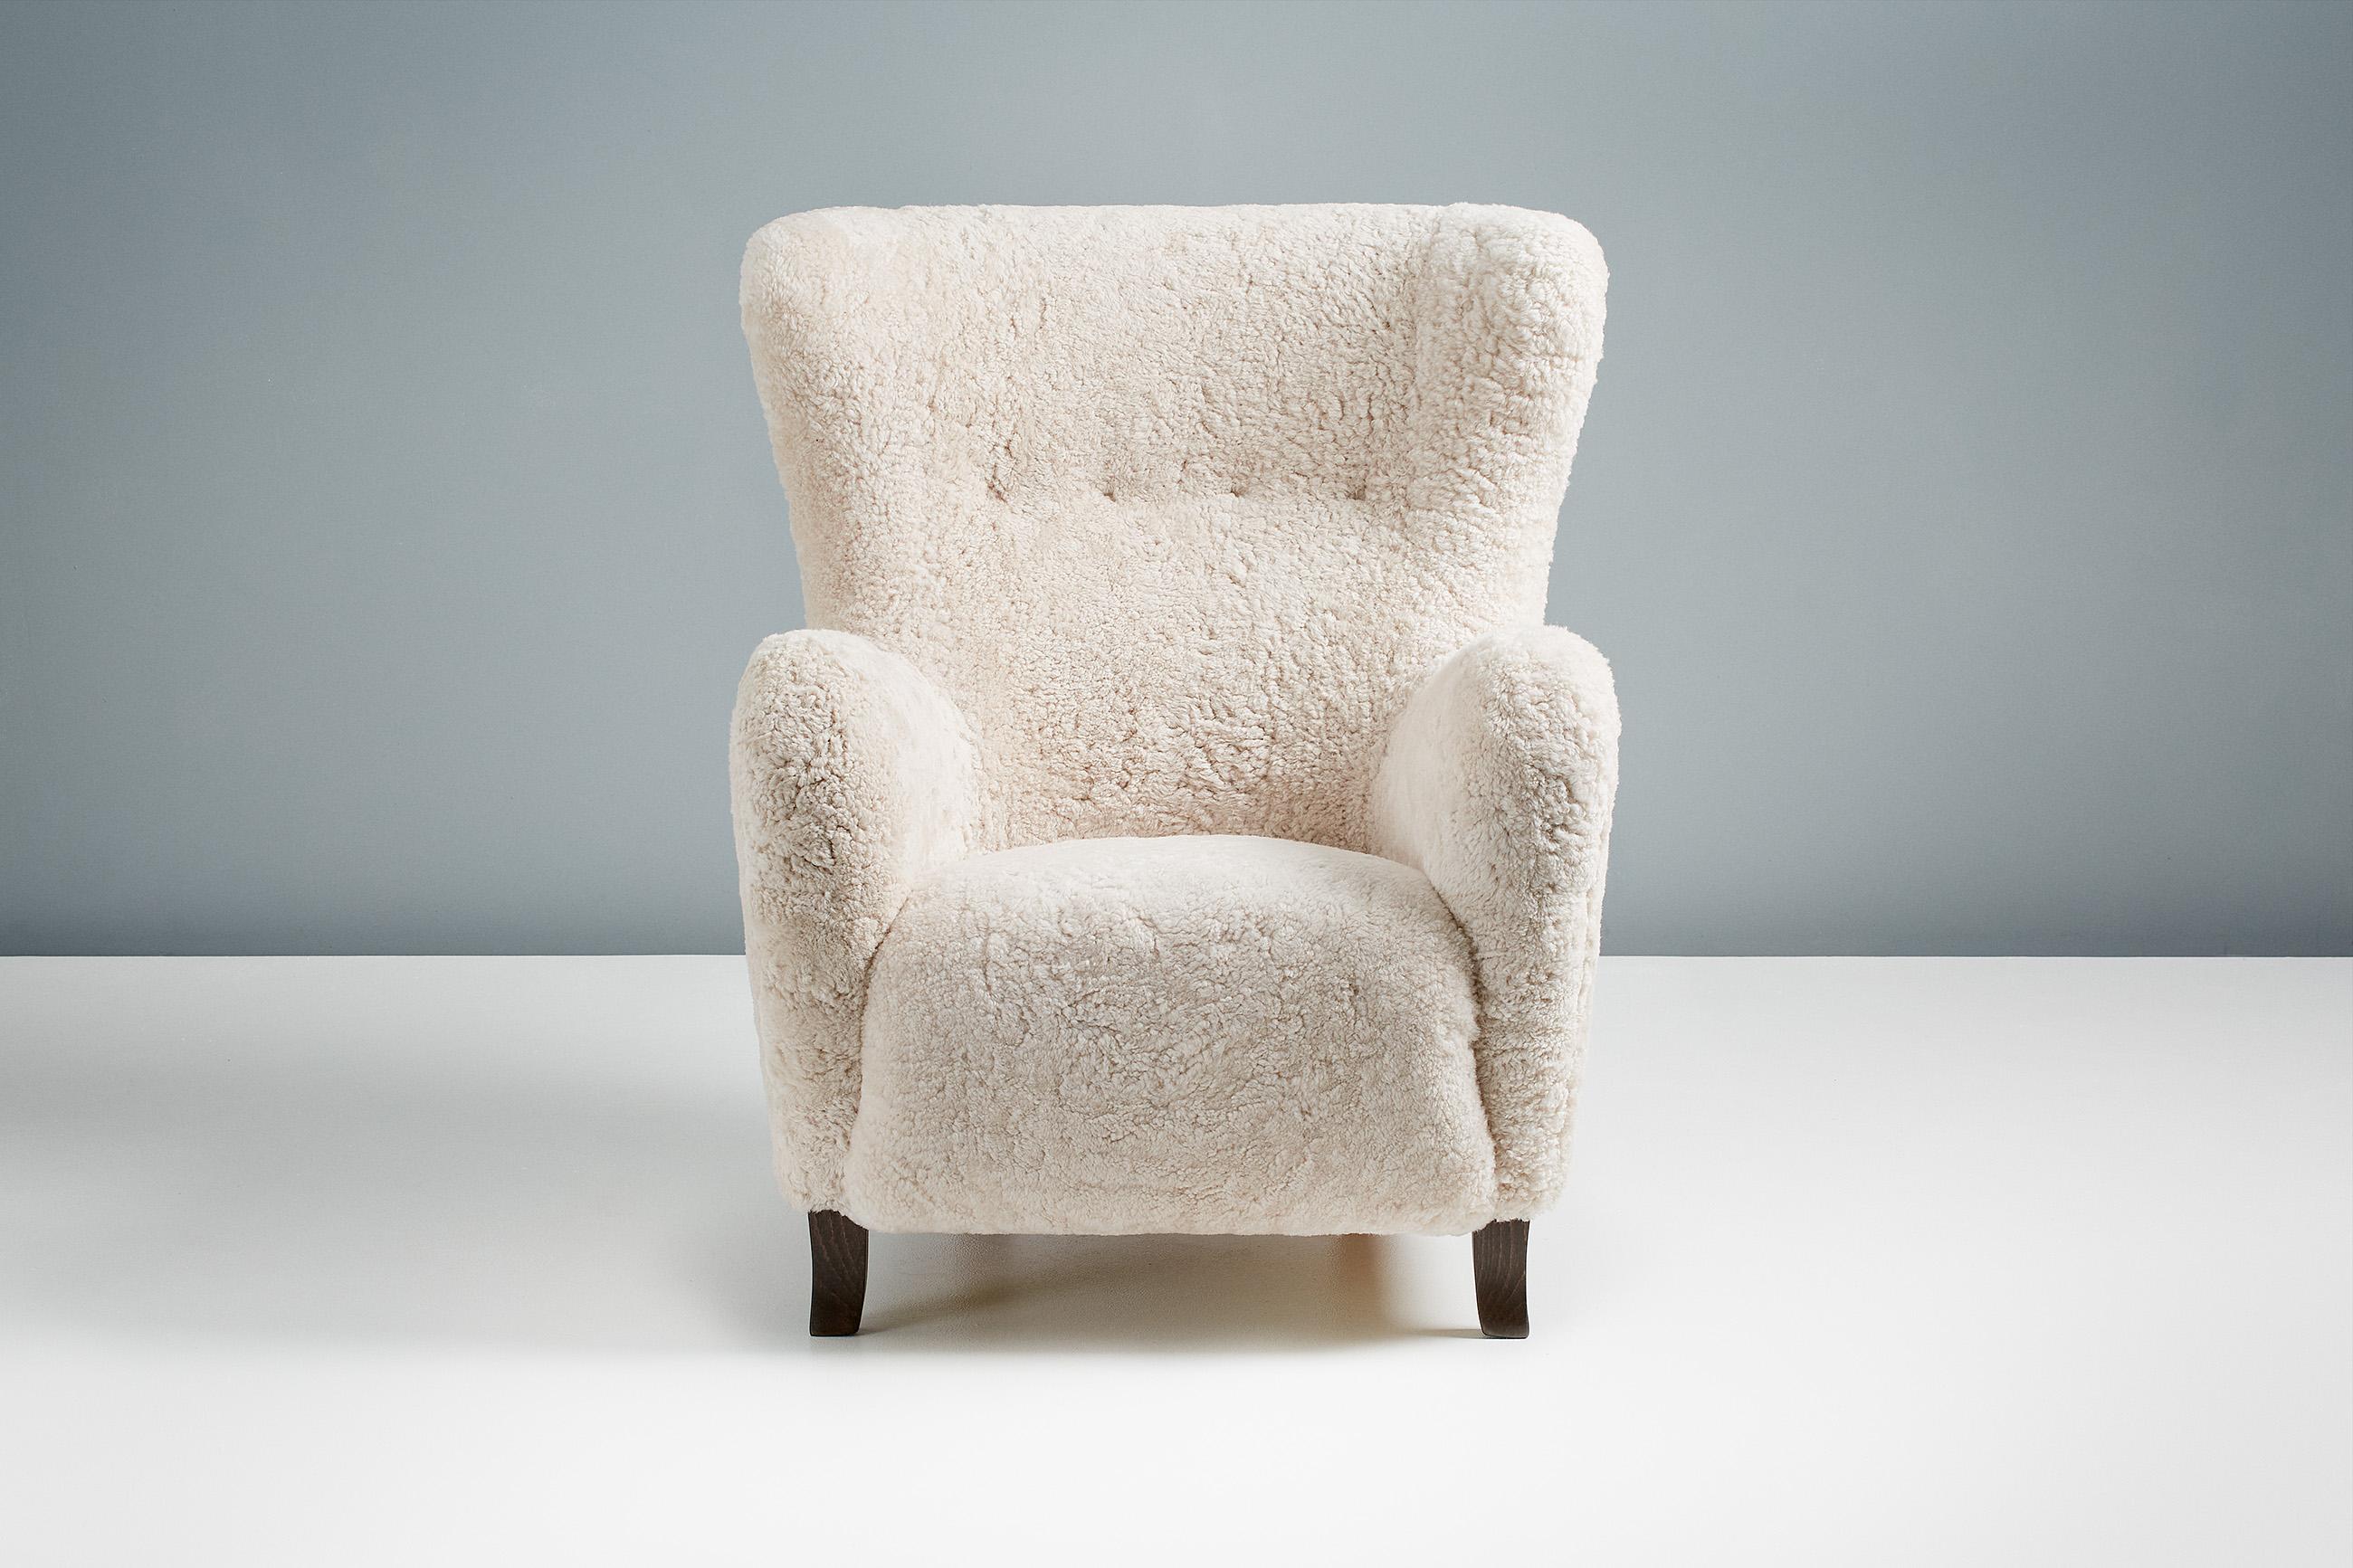 Dagmar - Sampo Wing Chair & Ottoman

Un fauteuil à oreilles et un ottoman sur mesure développés et produits dans nos ateliers à Londres en utilisant des matériaux de la plus haute qualité. Le cadre est fabriqué en bois de tulipier massif et l'assise